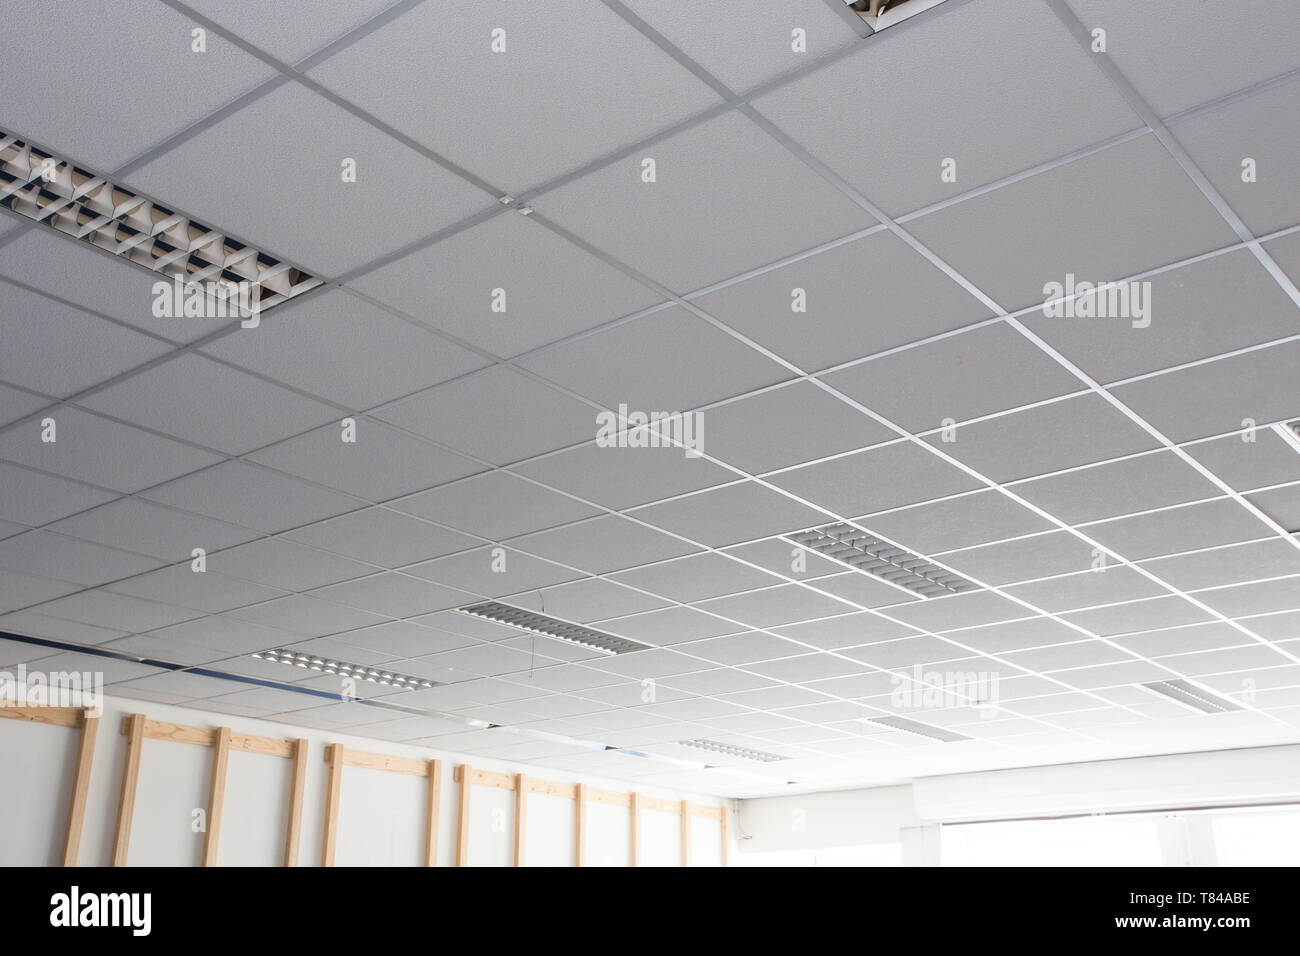 Abgehängte Decke mit LED square Lampen Sünde das Amt Stockfotografie - Alamy